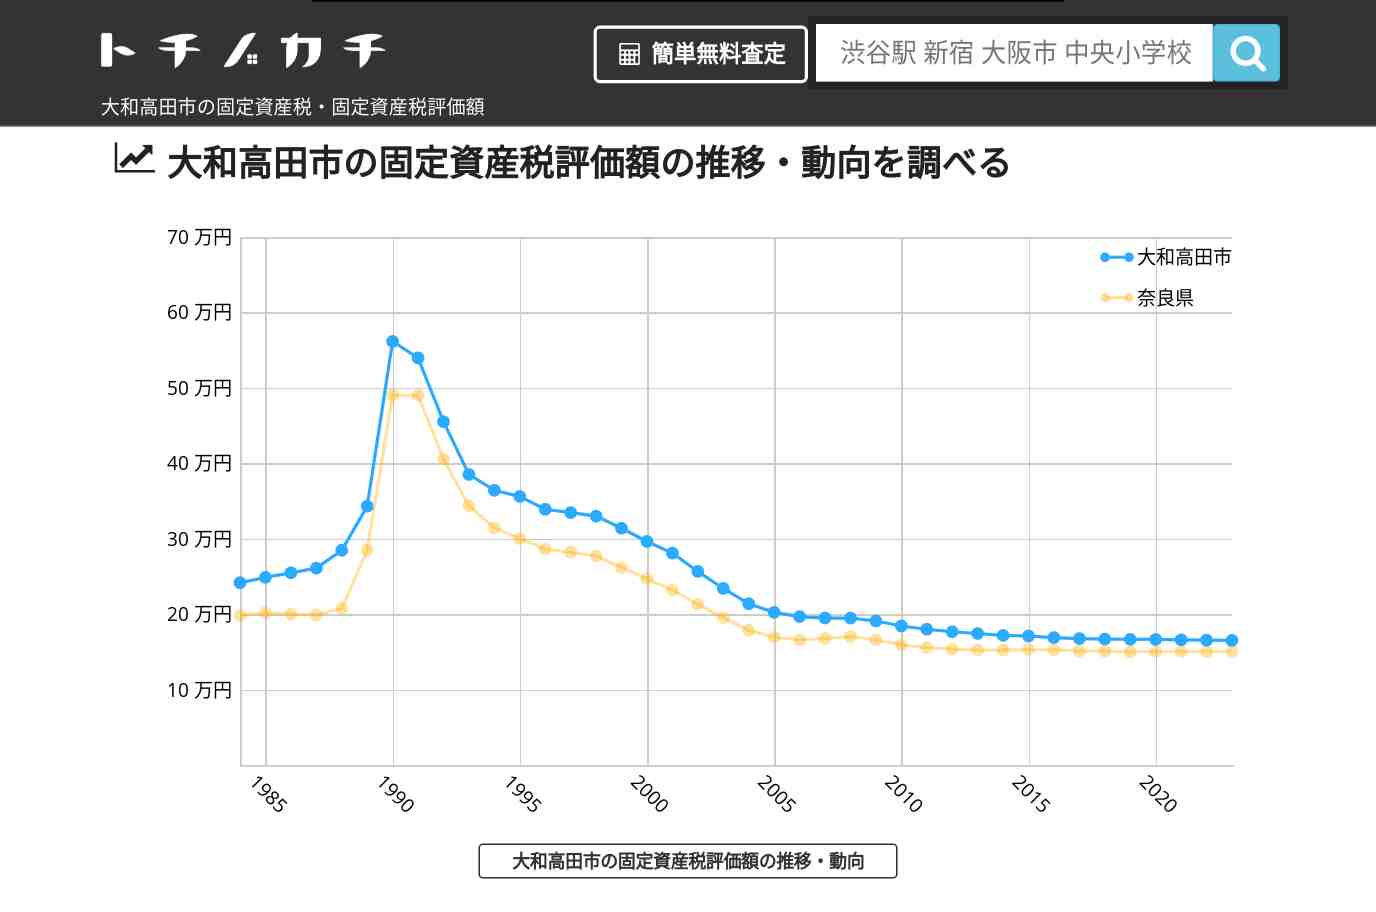 浮孔小学校(奈良県 大和高田市)周辺の固定資産税・固定資産税評価額 | トチノカチ